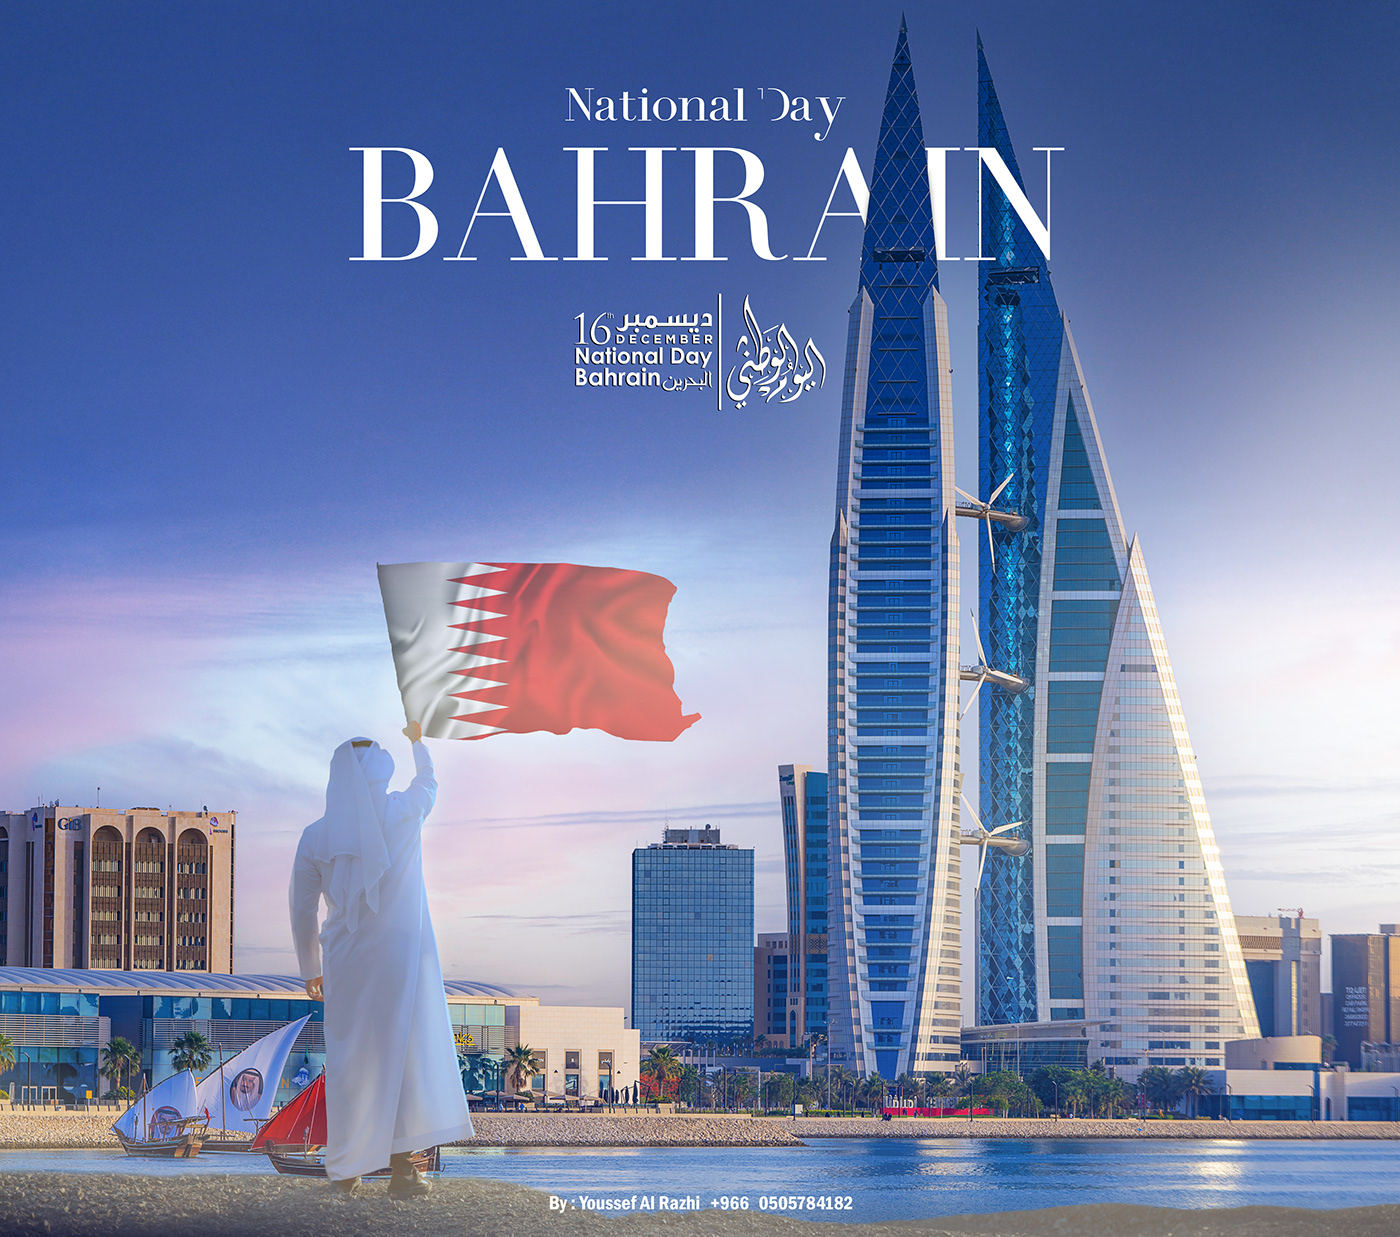 Bahrain bahrain day Bahrain National Bahrain National Day flag National day National Day Parade